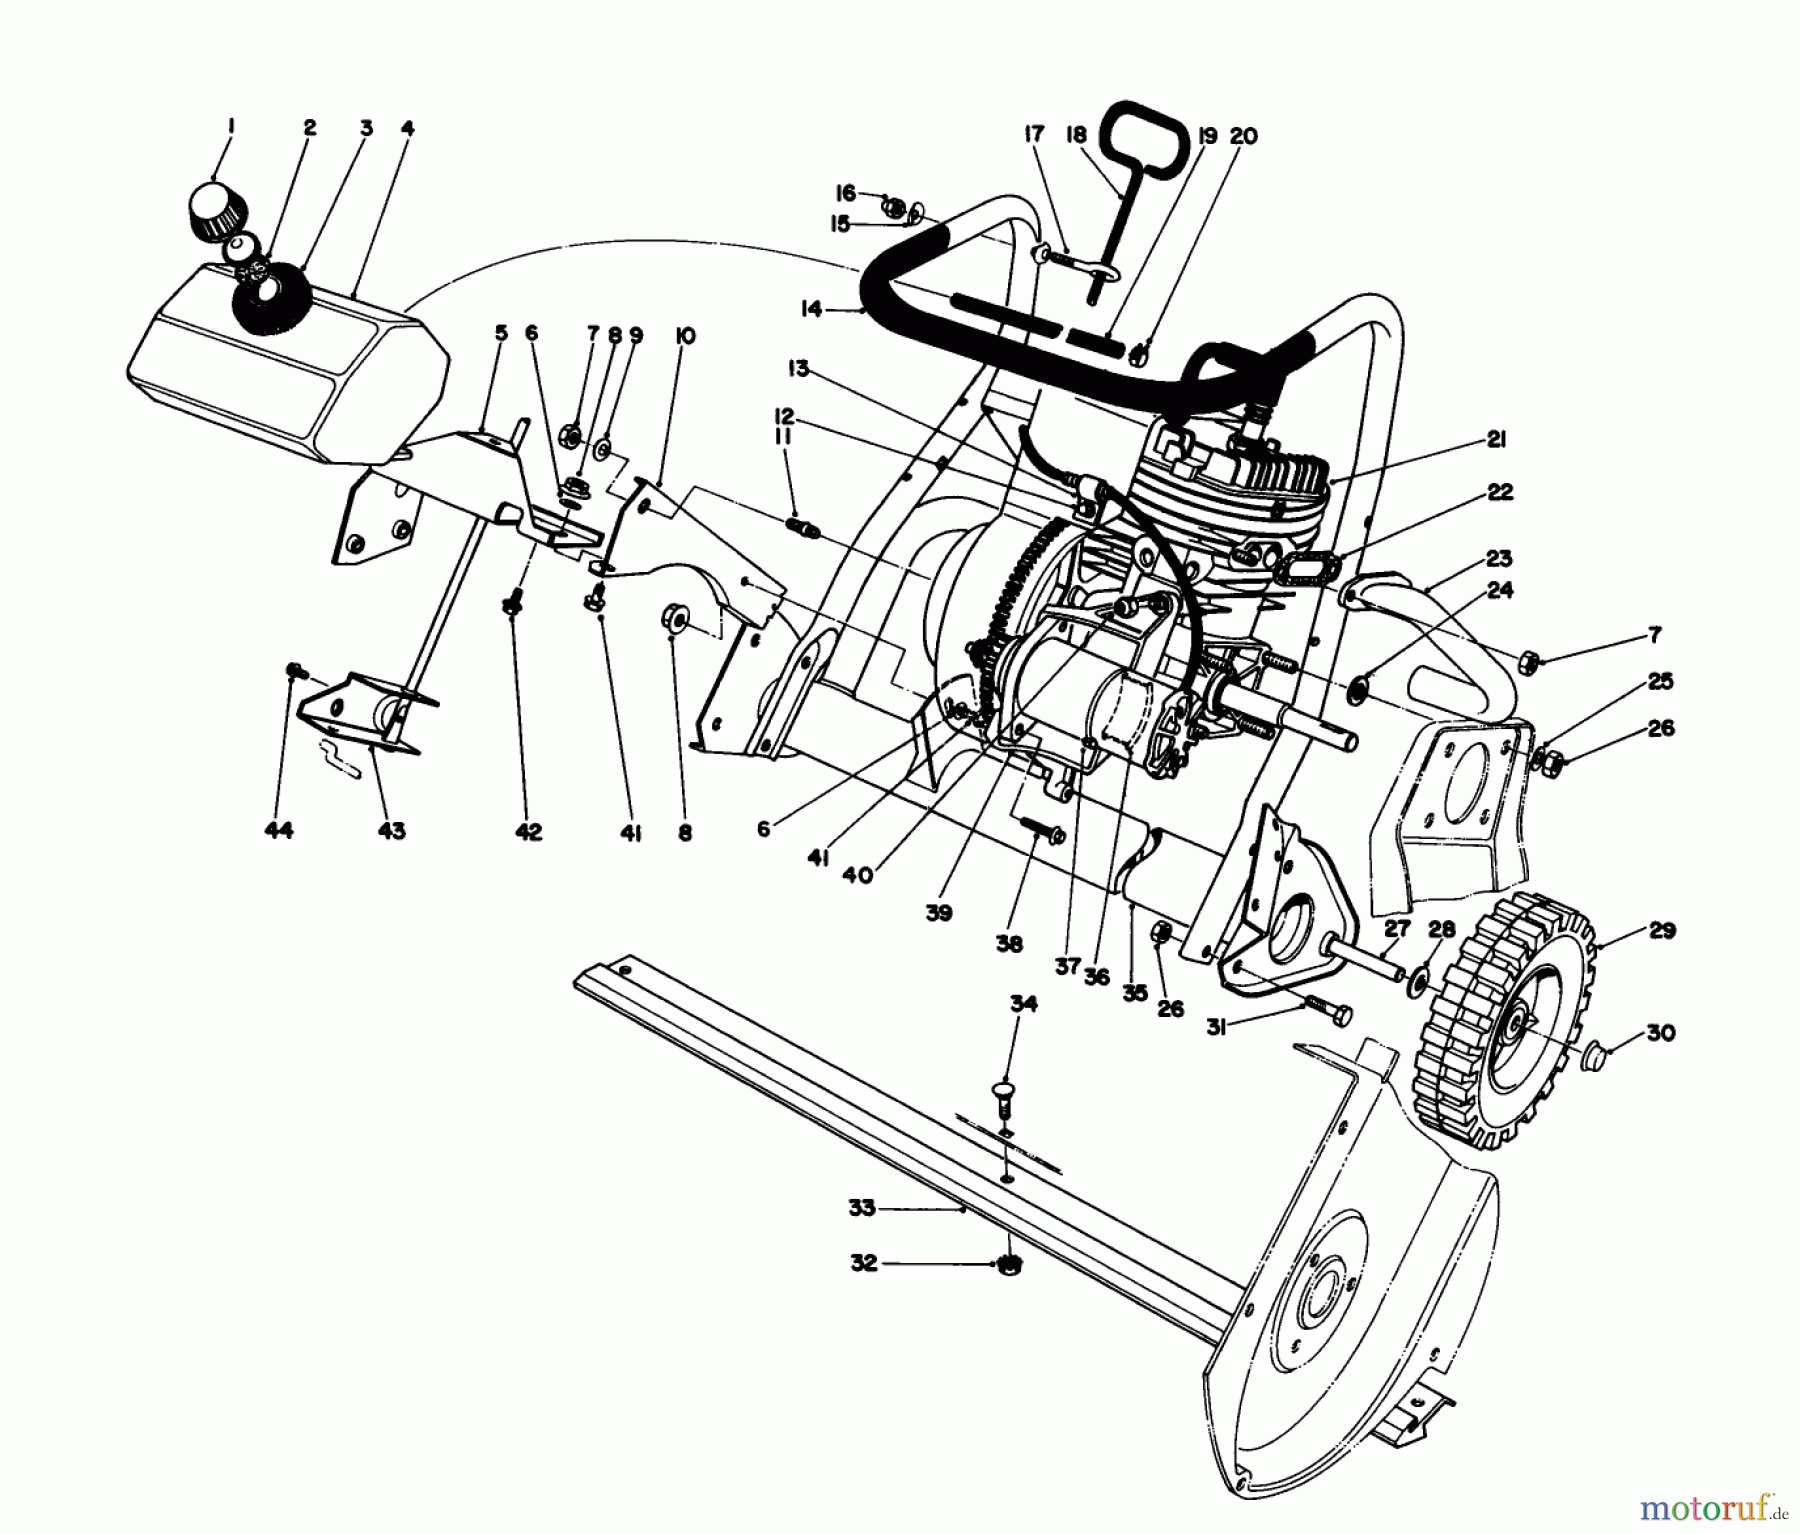  Toro Neu Snow Blowers/Snow Throwers Seite 1 38162C (S-620) - Toro S-620 Snowthrower, 1986 (6000001-6999999) ENGINE ASSEMBLY